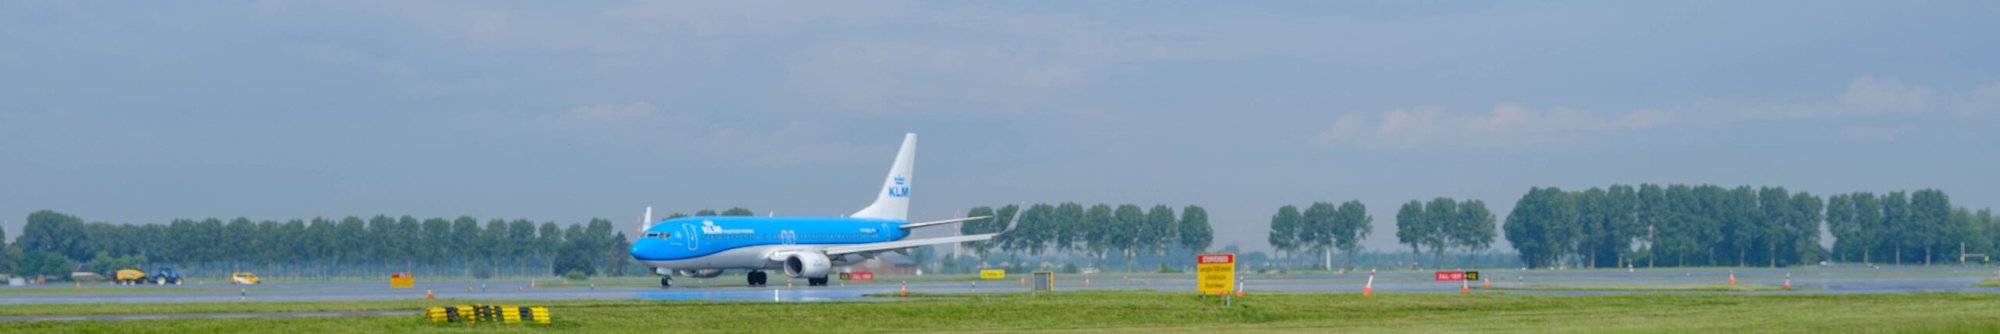 KLM vliegtuig op de Polderbaan